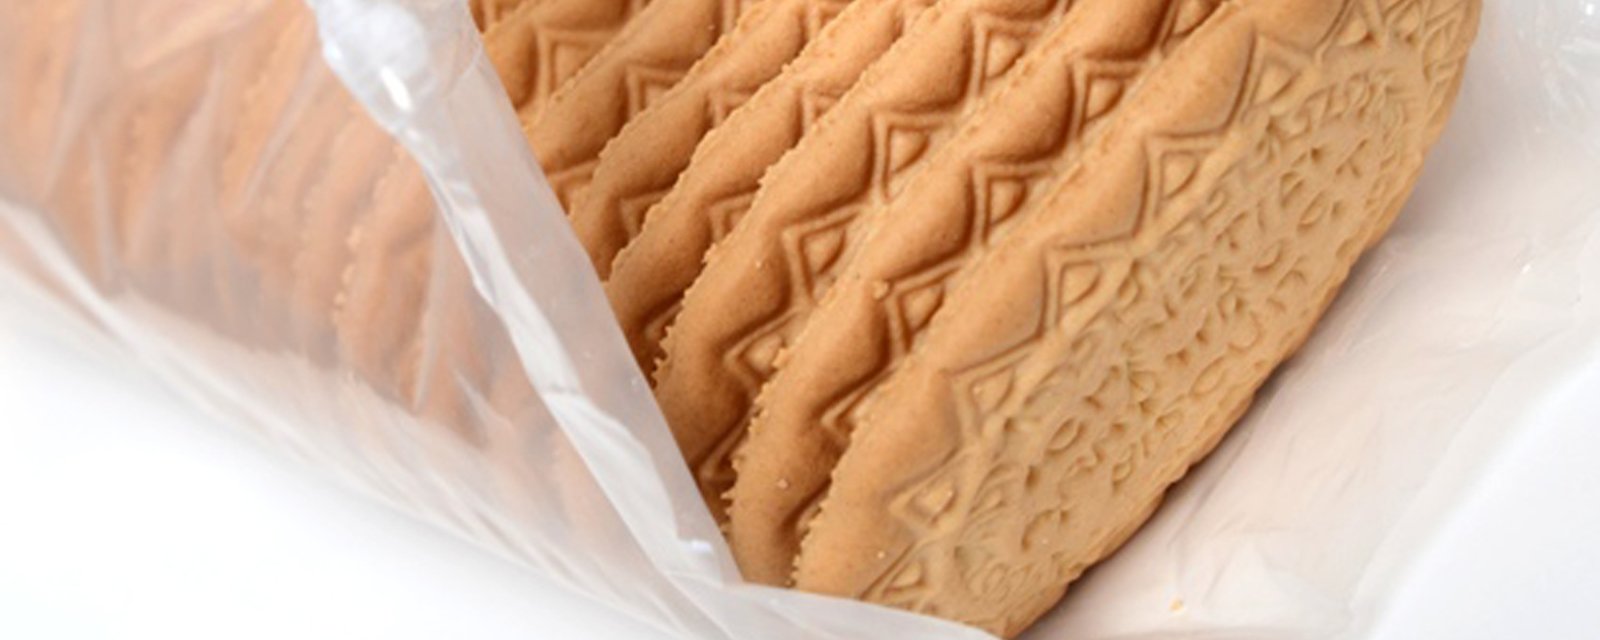 Une populaire marque de biscuits bien appréciés des jeunes enfants fait l'objet d'un important rappel.